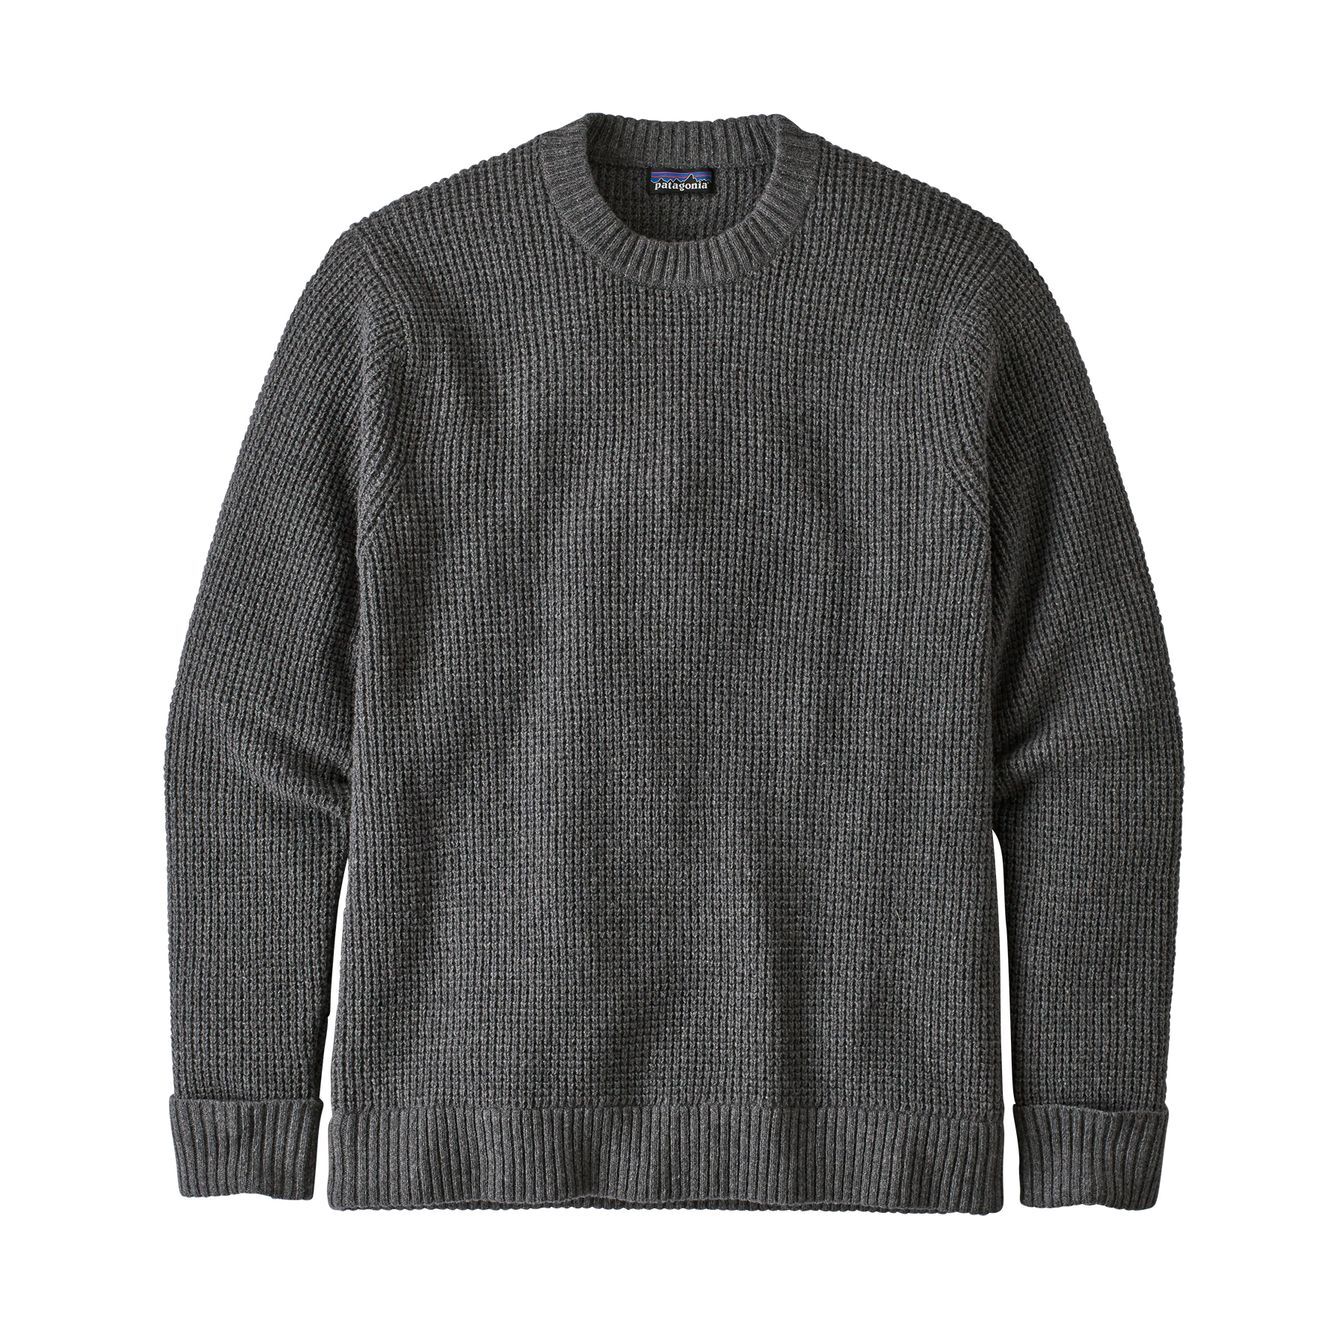 Patagonia Recycled Wool Sweater - Felpa - Uomo